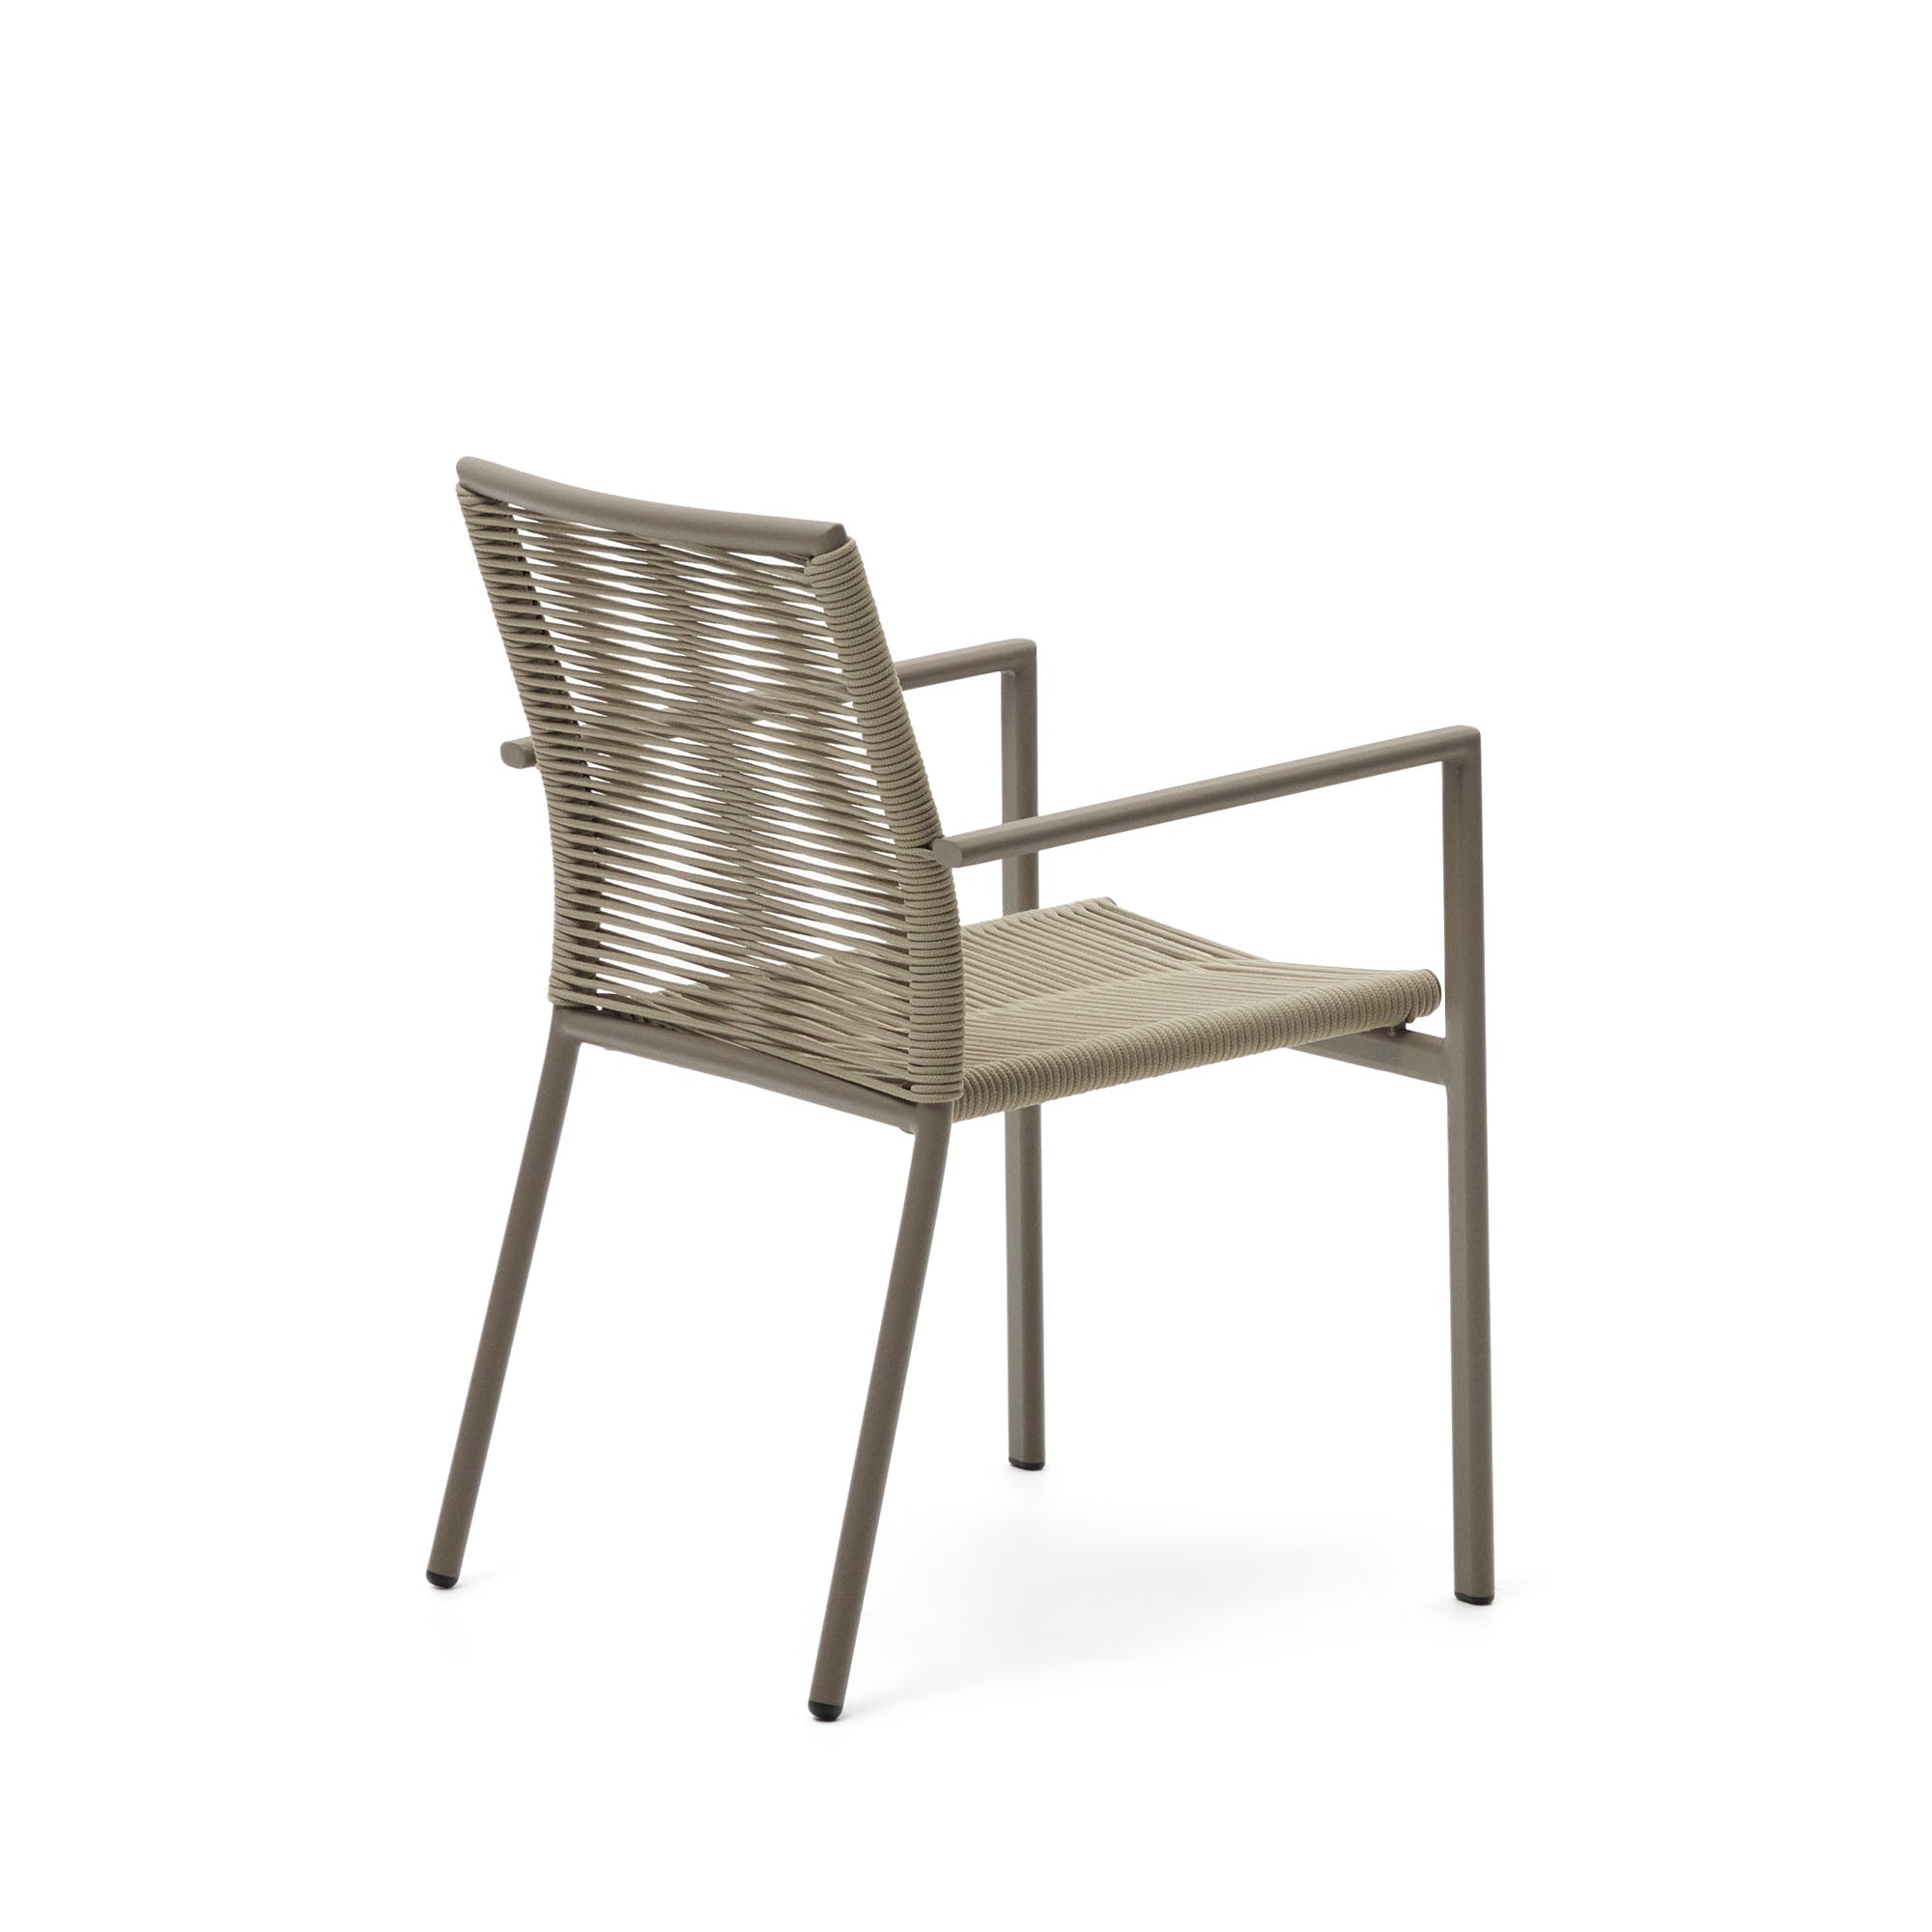 Culip alumíniumból és zsinórból készült, egymásba rakható kültéri szék barna színben